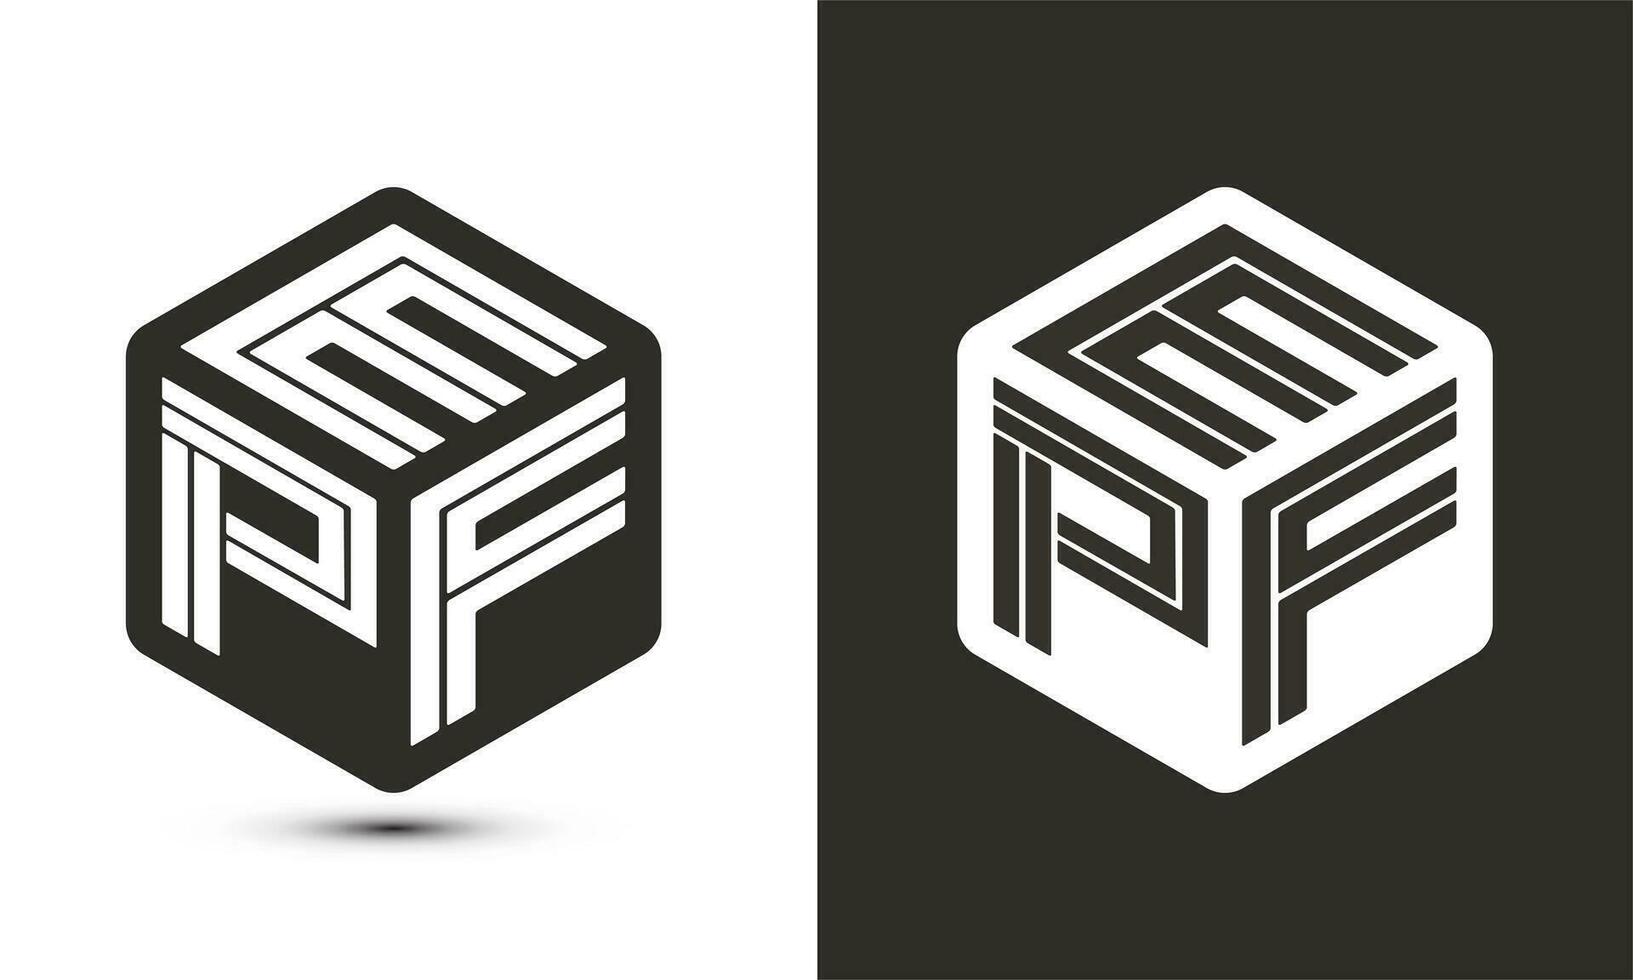 epf brief logo ontwerp met illustrator kubus logo, vector logo modern alfabet doopvont overlappen stijl.